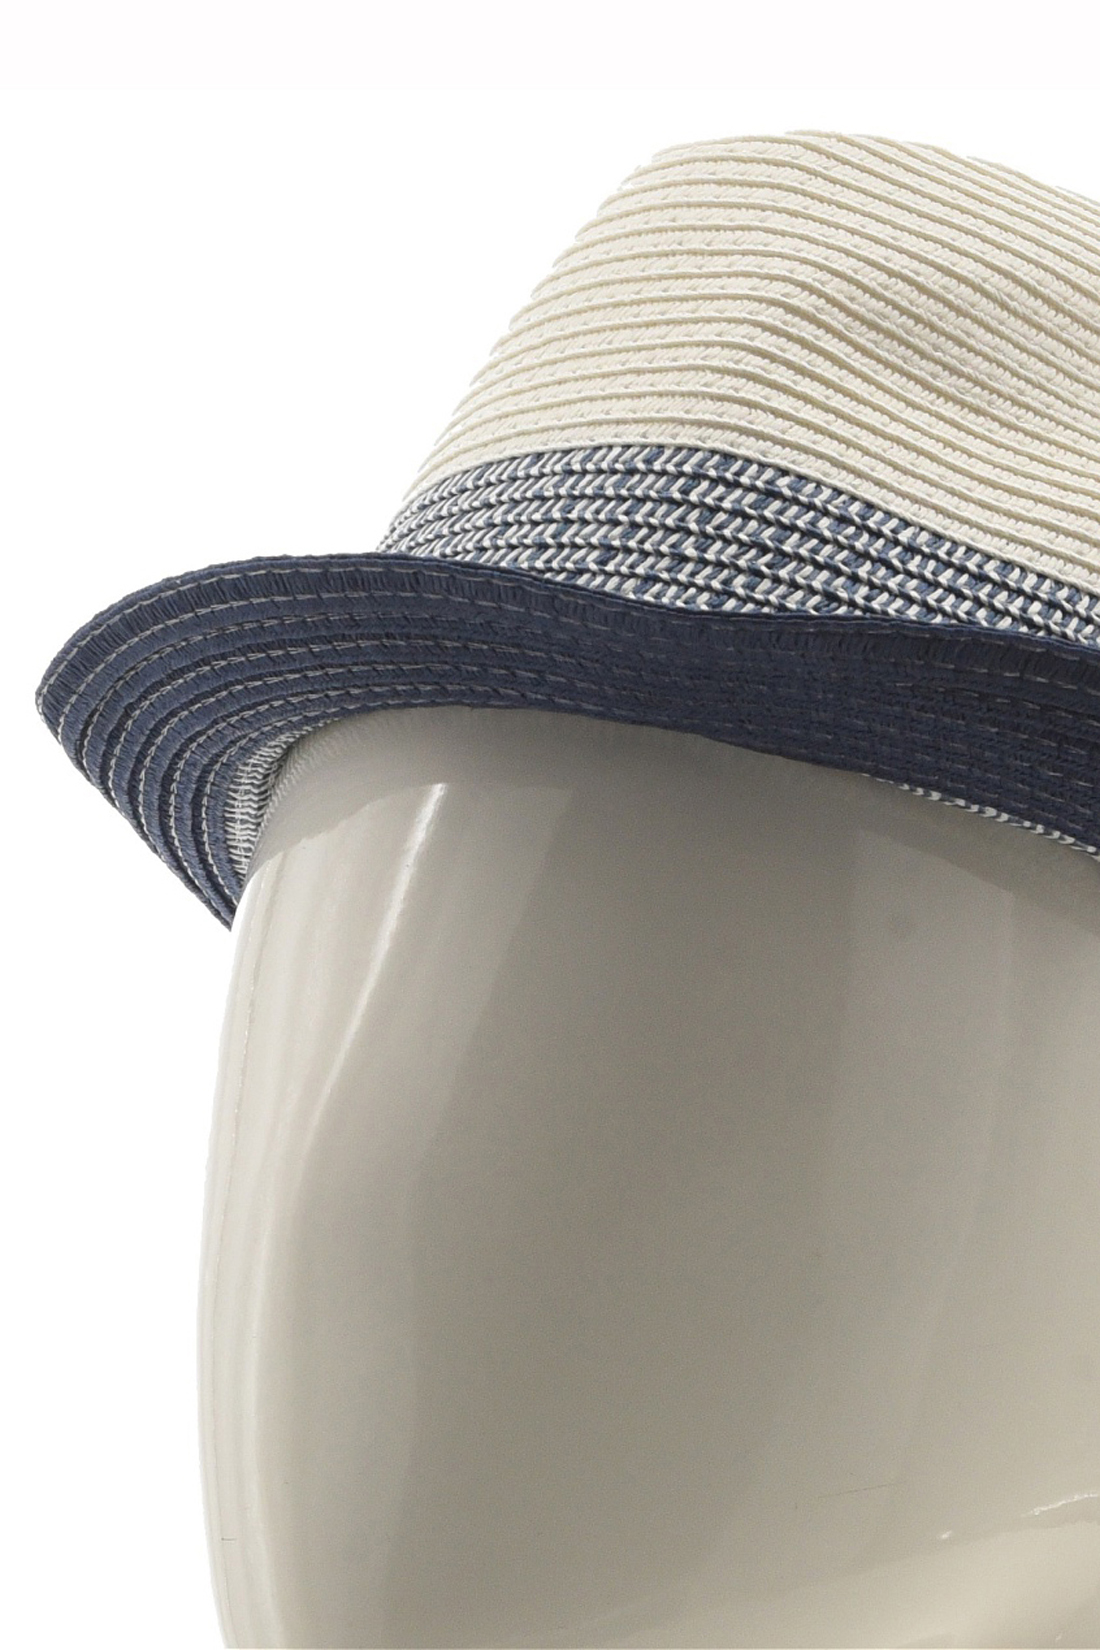 Шляпа мужская Baon B849004 white, р. 58